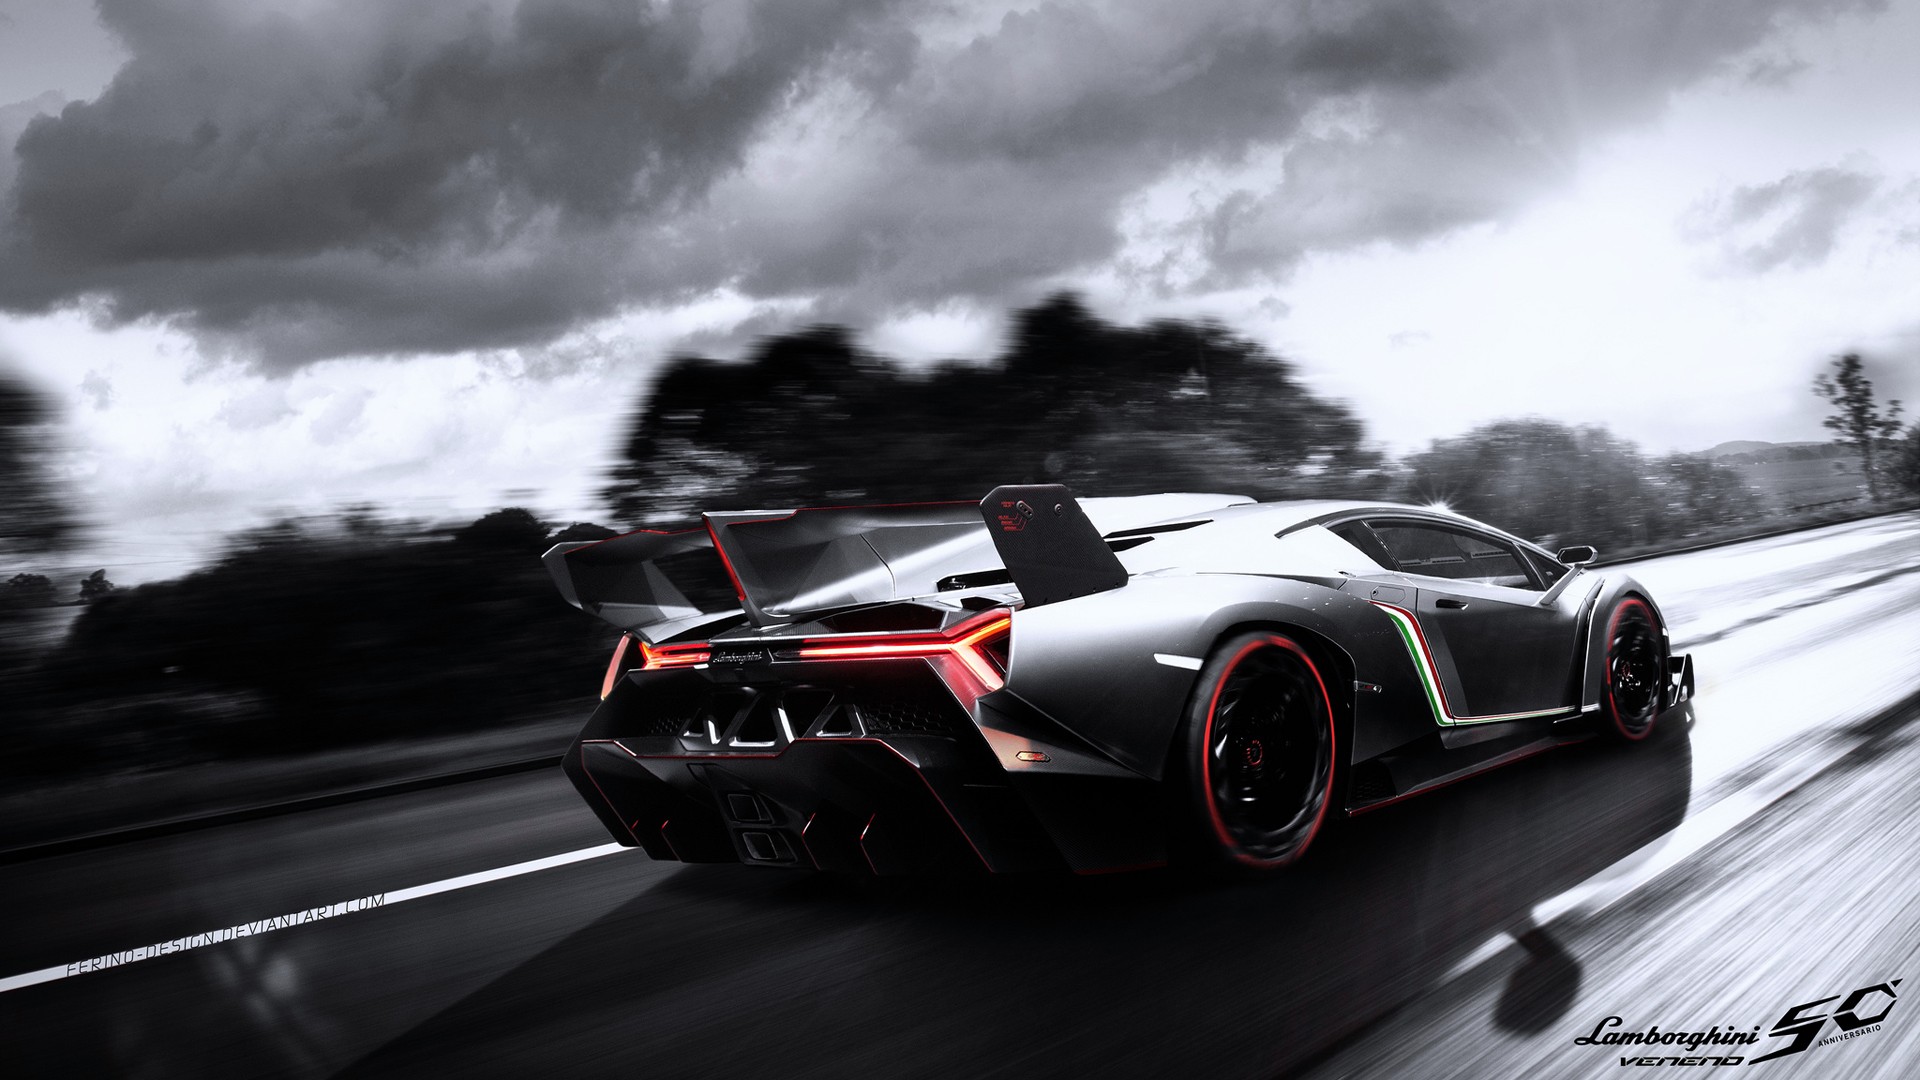 Download Lamborghini Wallpapers In HD For Desktop And